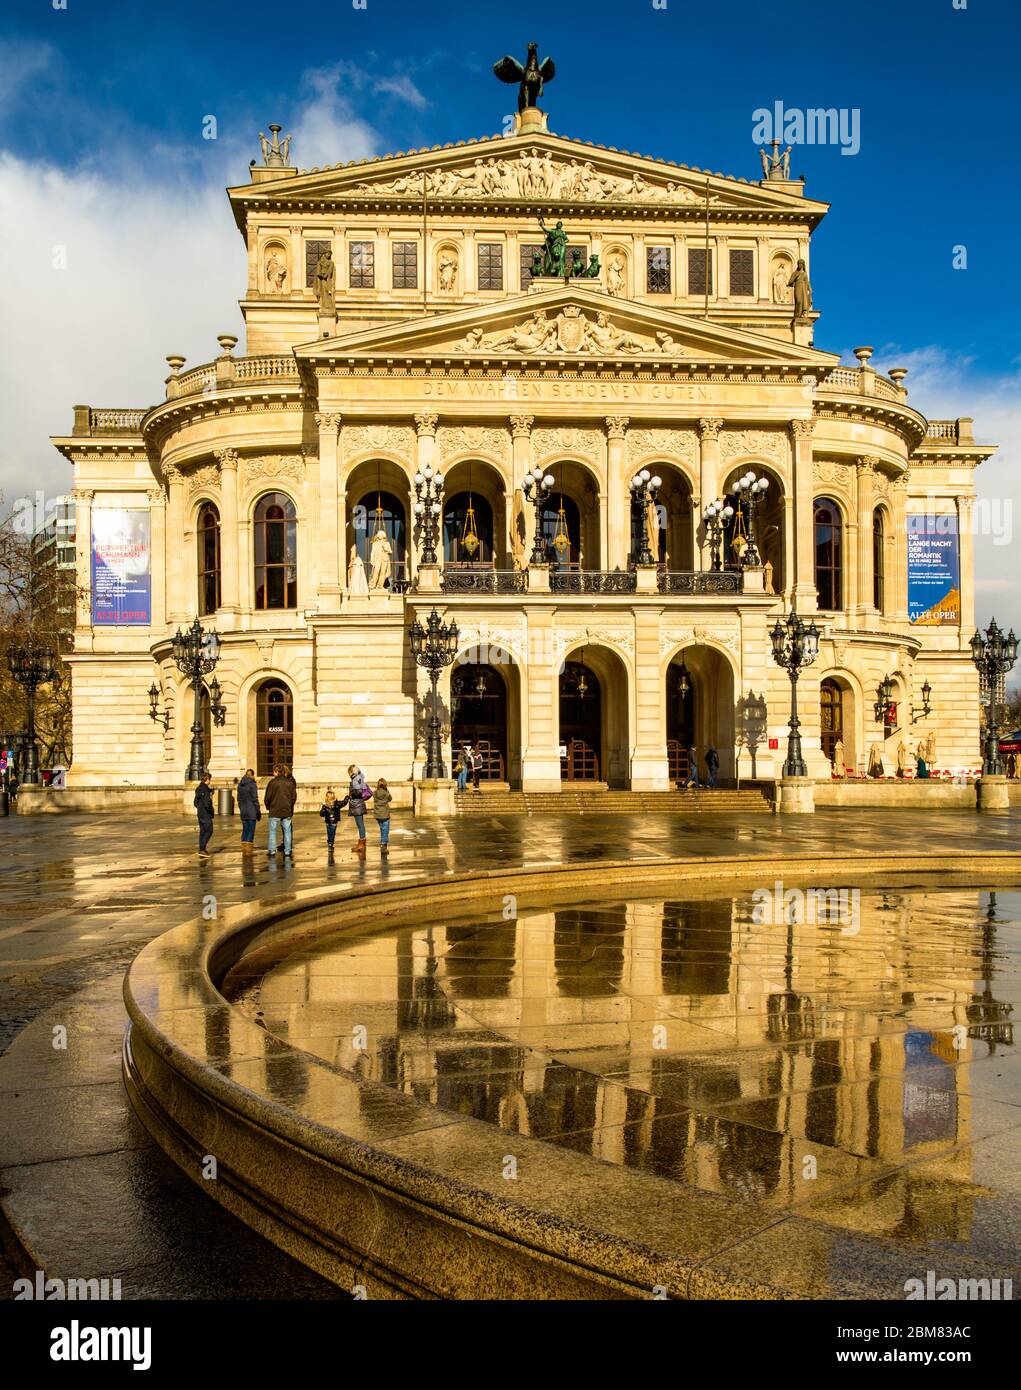 L'Alte Oper, Francfort-sur-le-main, Allemagne, avec réflexion dans une zone pavée humide. C'est l'opéra original de Francfort et est maintenant une salle de concert. Banque D'Images